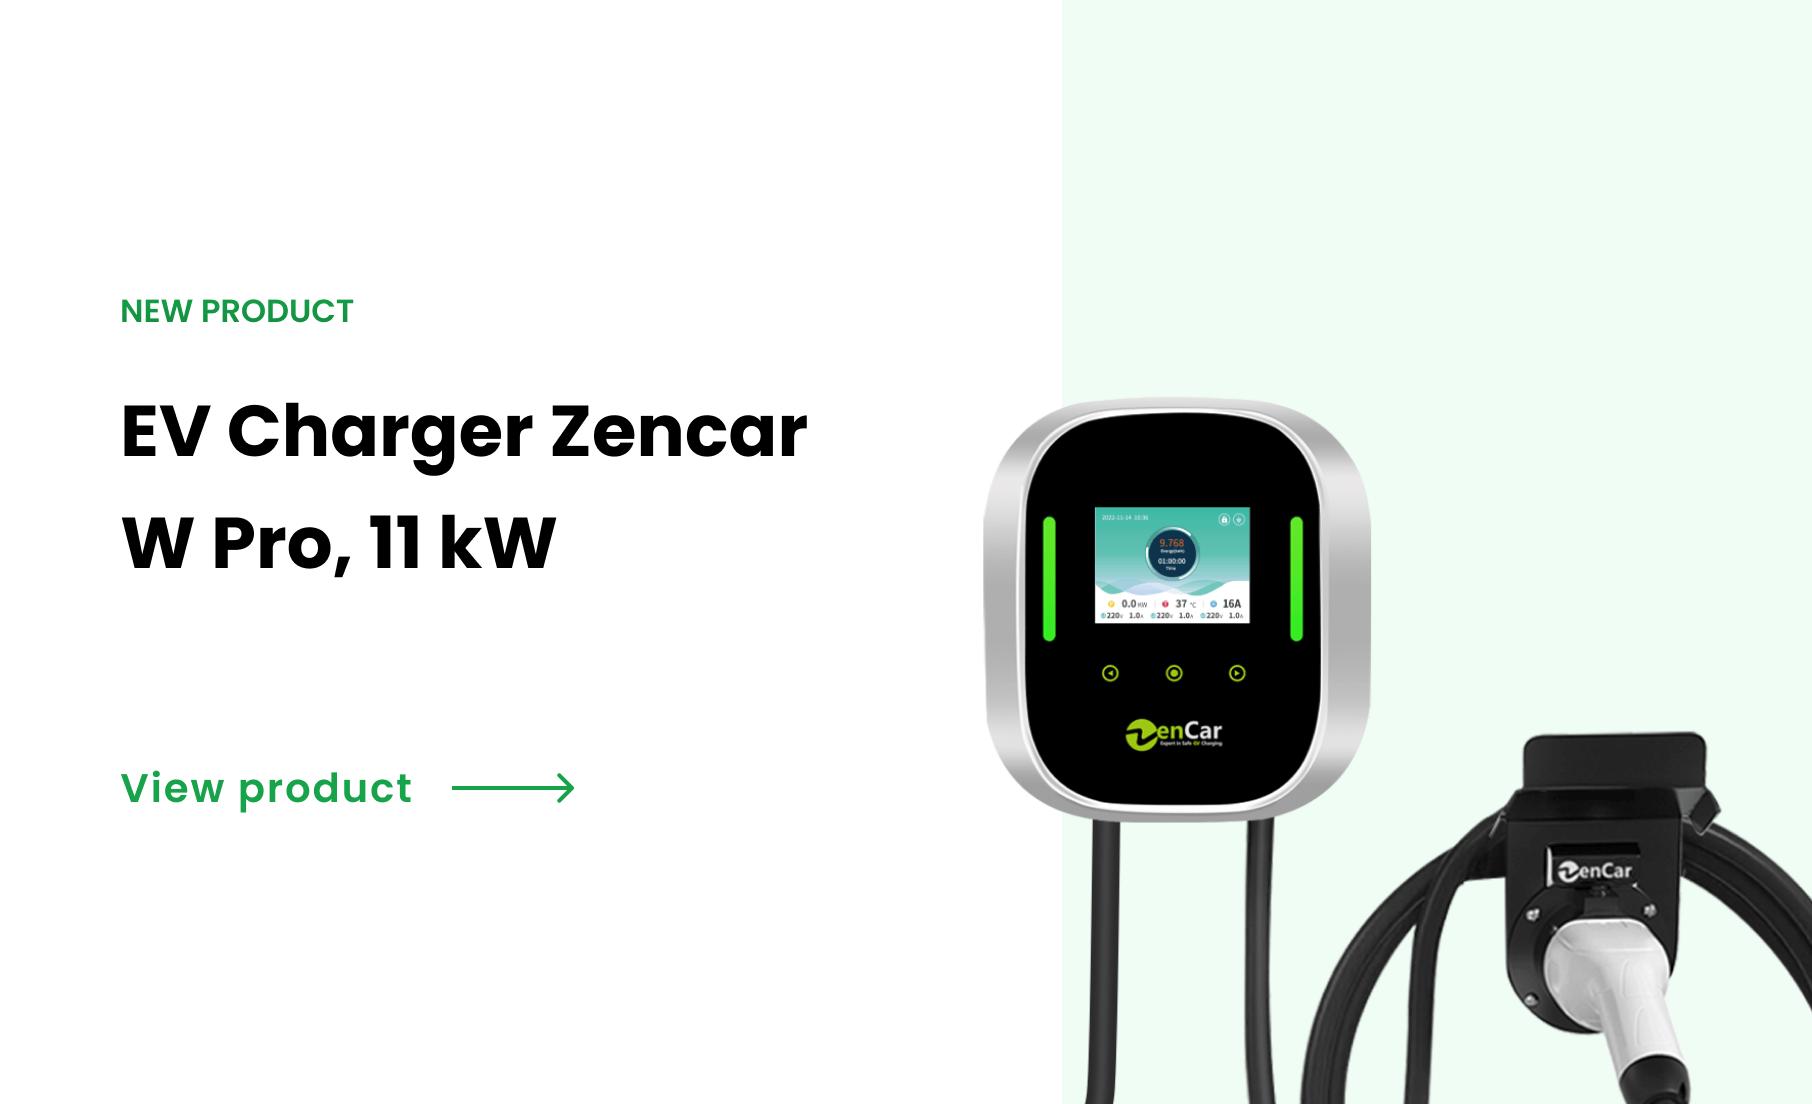 EV Charger Zencar W Pro, 11 kW